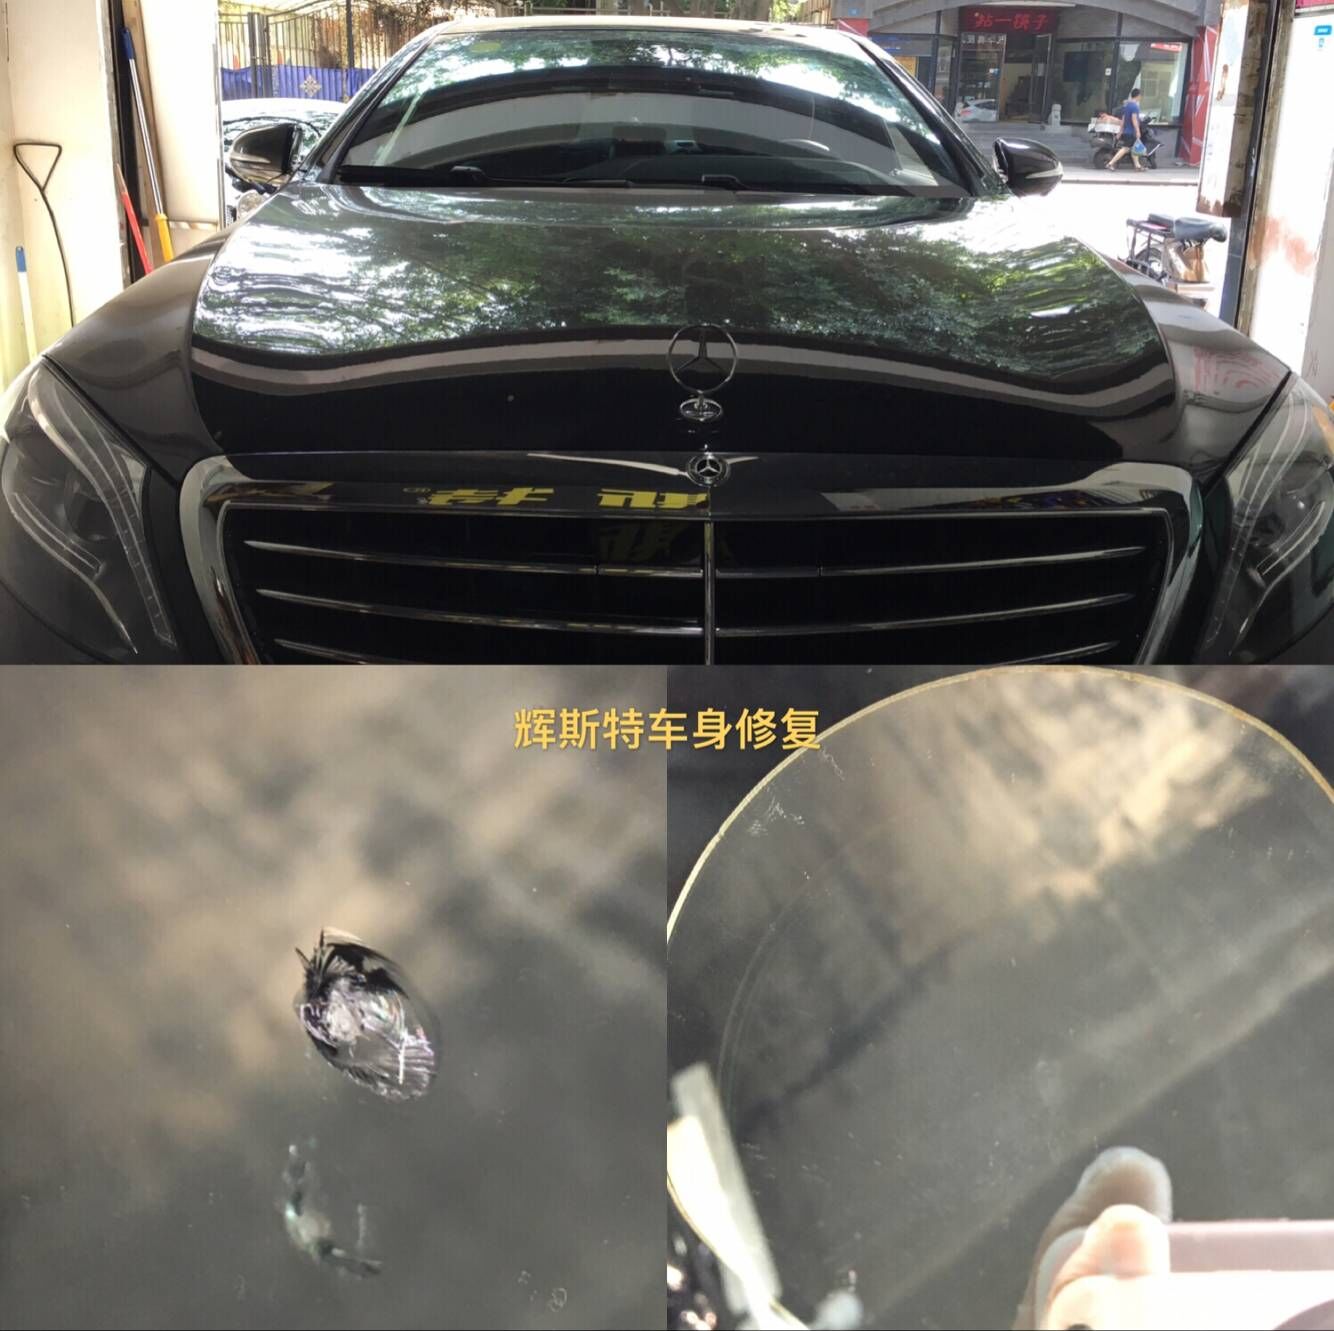 成都武侯区汽车前挡风玻璃裂痕修补 奥迪汽车玻璃修复 奔驰玻璃划痕修复